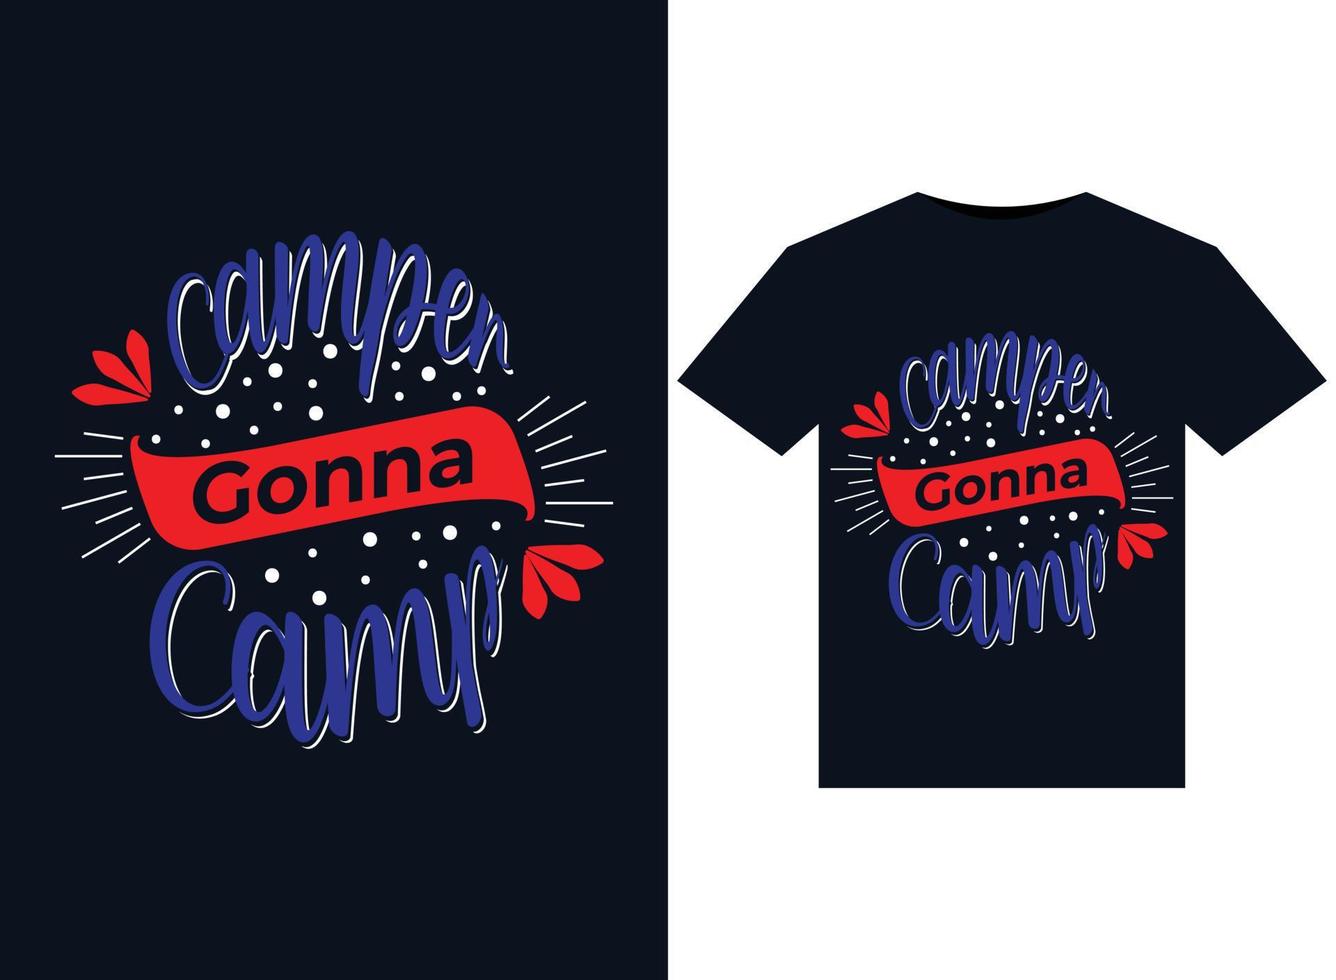 ilustrações de campista vai acampar para design de camisetas prontas para impressão vetor